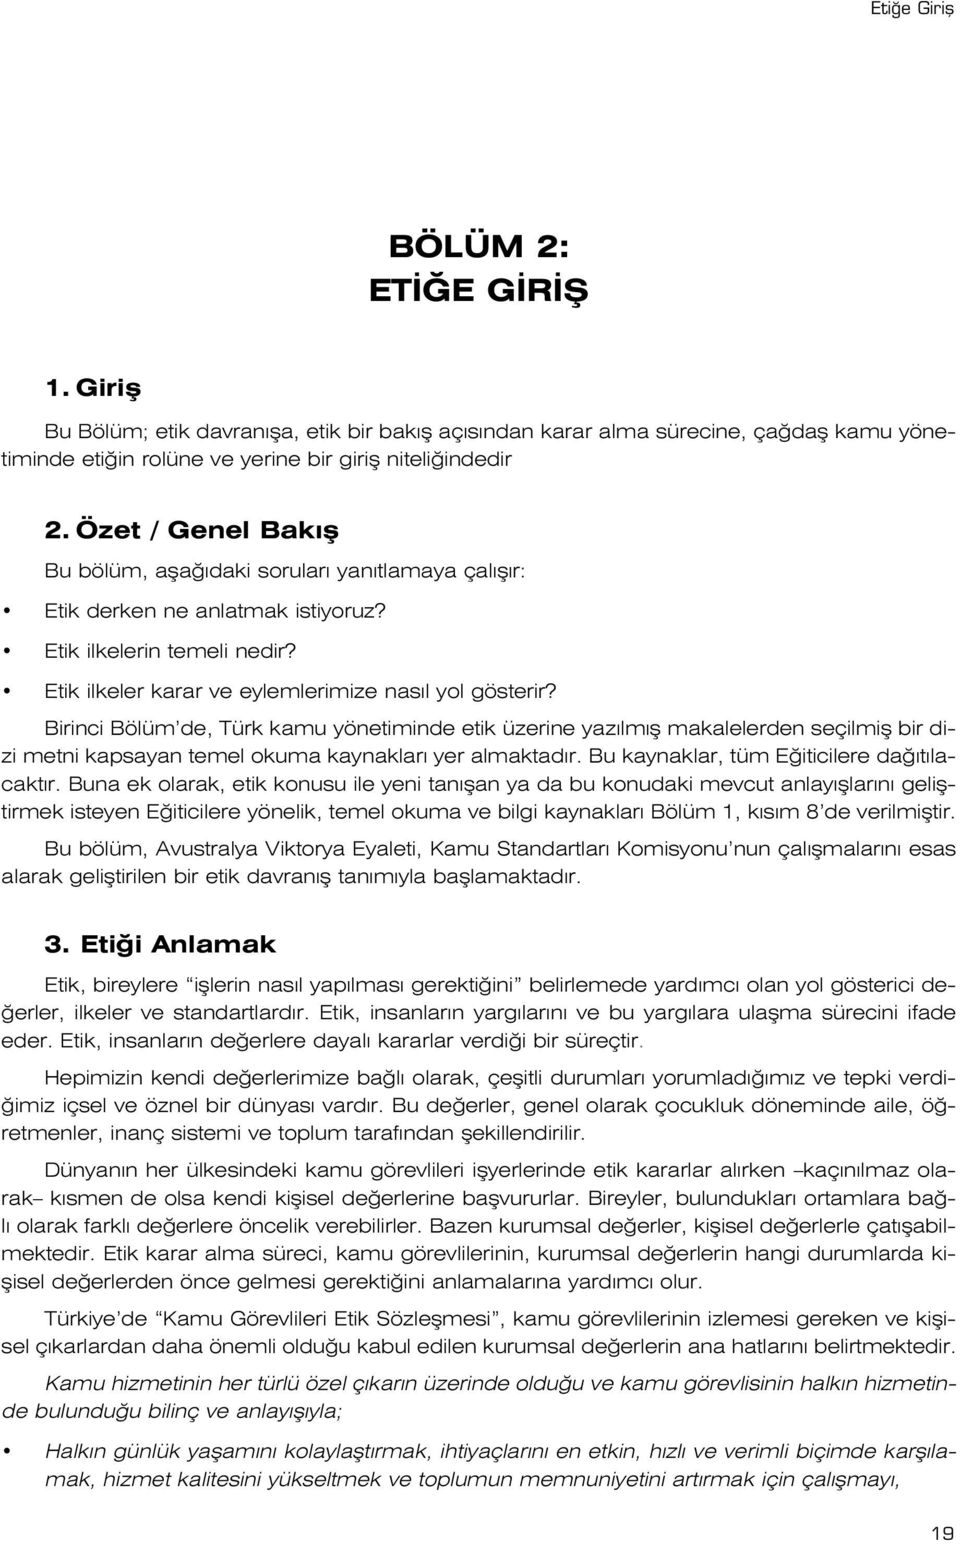 Birinci Bölüm de, Türk kamu yönetiminde etik üzerine yaz lm fl makalelerden seçilmifl bir dizi metni kapsayan temel okuma kaynaklar yer almaktad r. Bu kaynaklar, tüm E iticilere da t lacakt r.